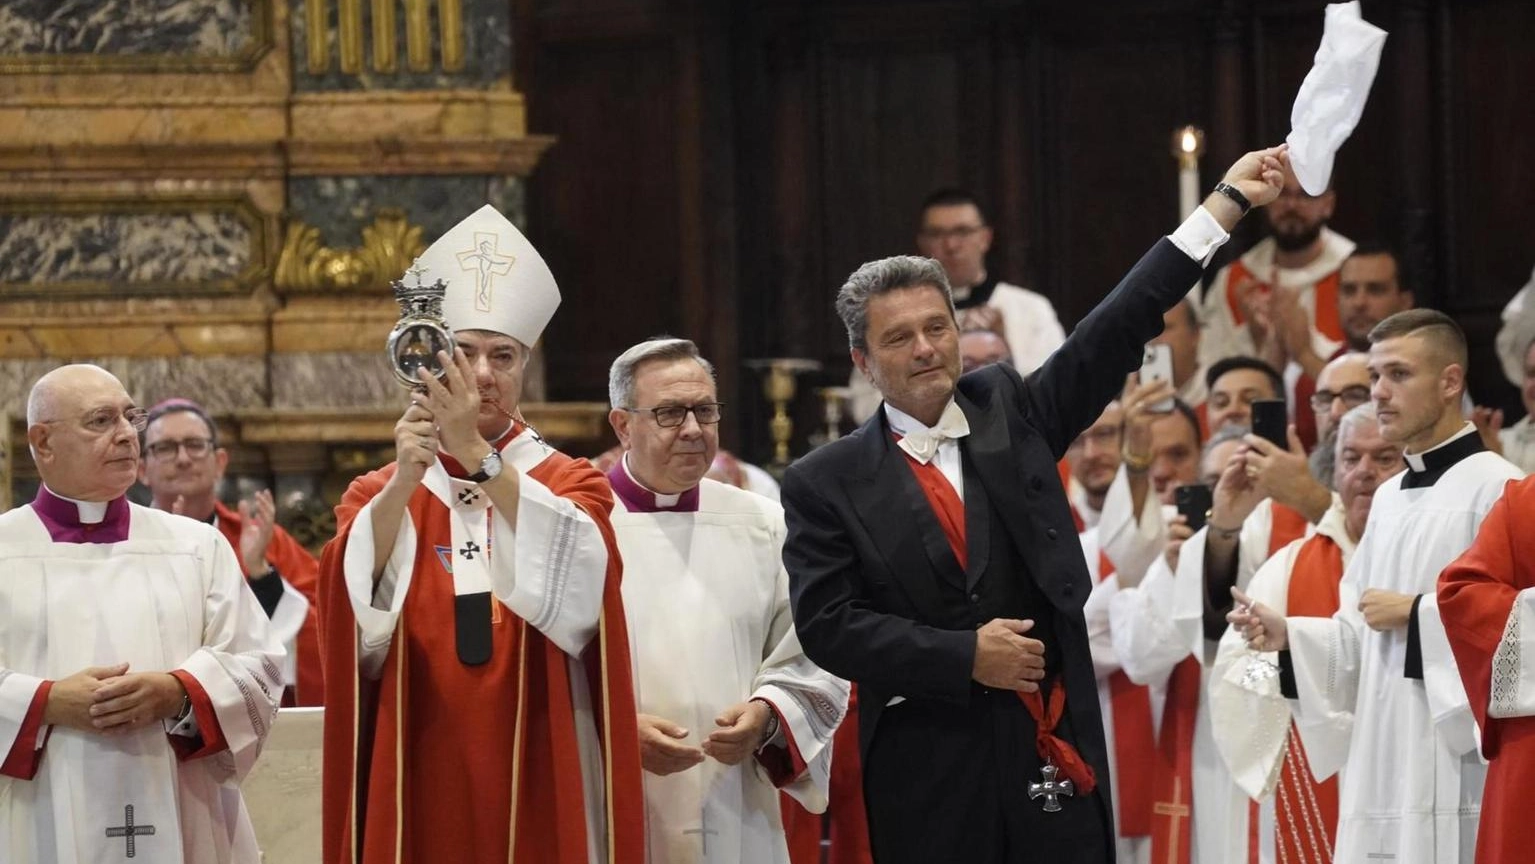 Il prodigio della liquefazione è avvenuto alle 10.03 nella Cattedrale di Napoli affollata fin dalla mattina presto per il giorno del santo patrono